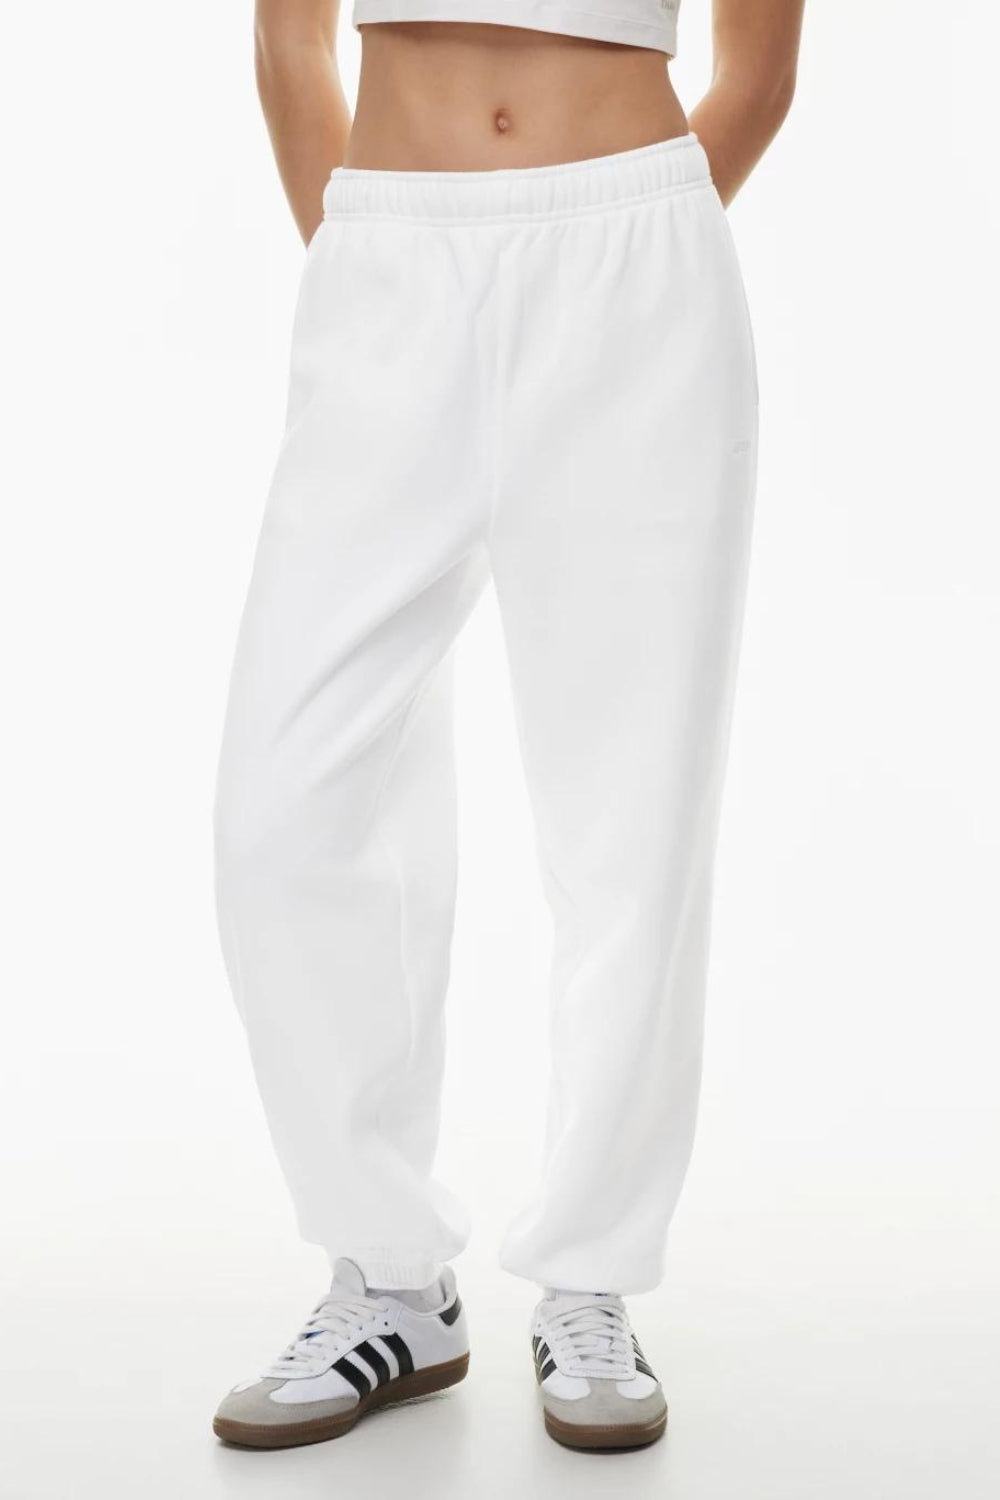 Aria White trouser